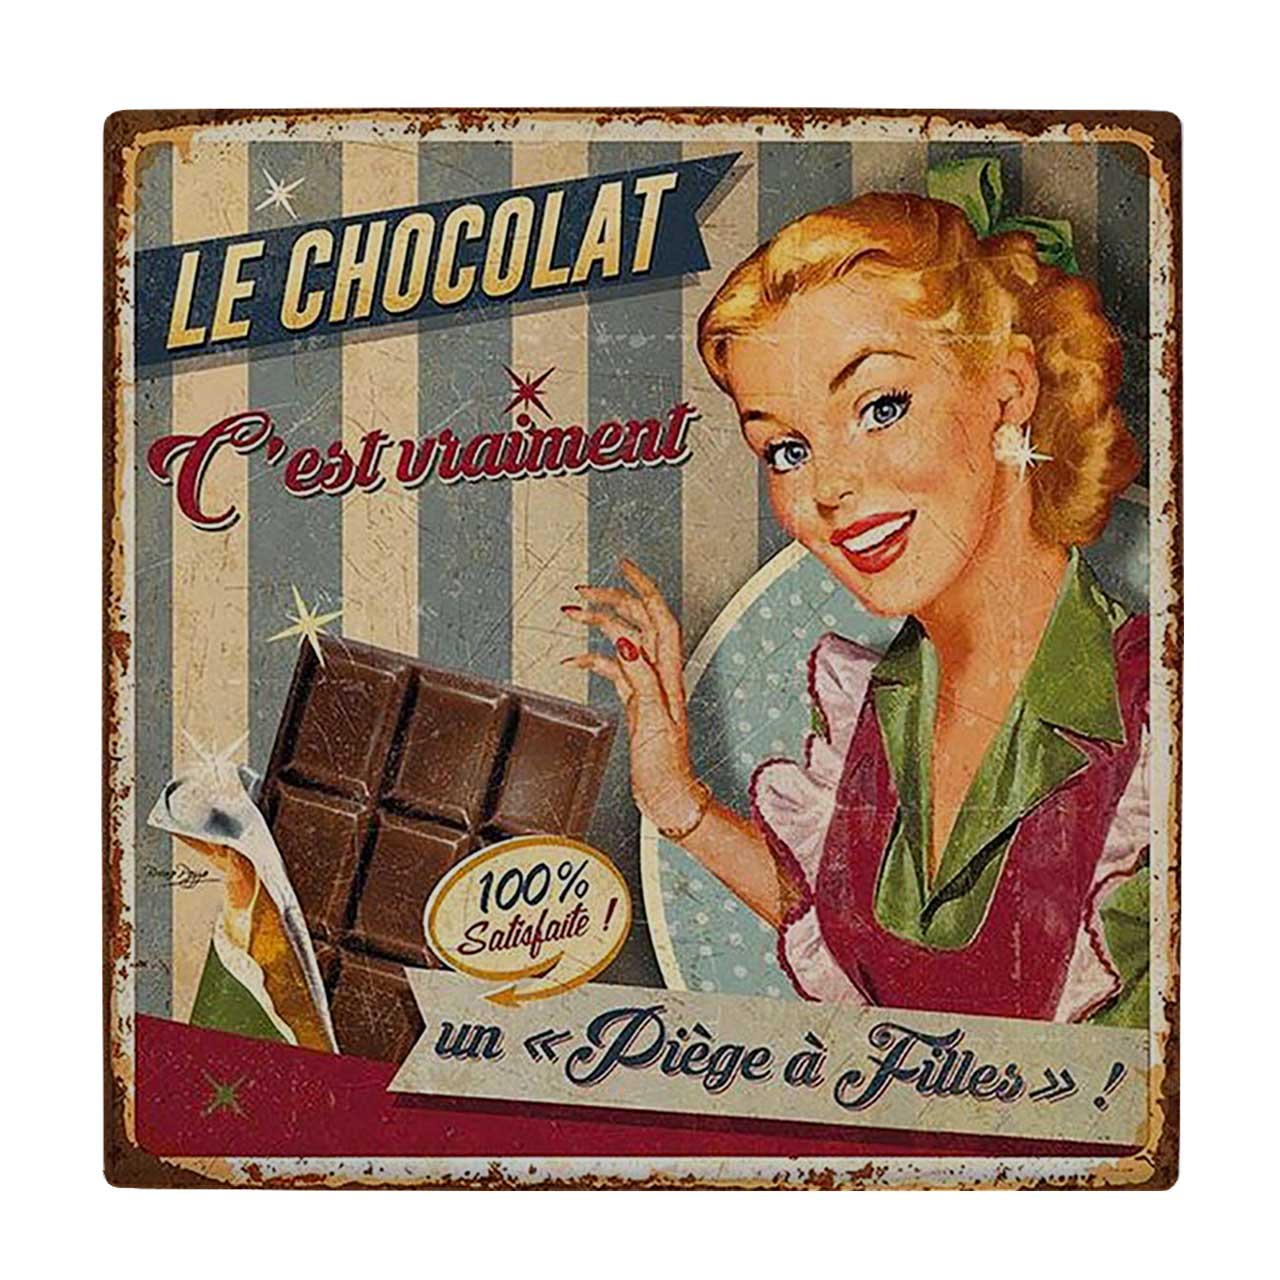  کاشی کارنیلا طرح تبلیغ شکلات کد wkk619